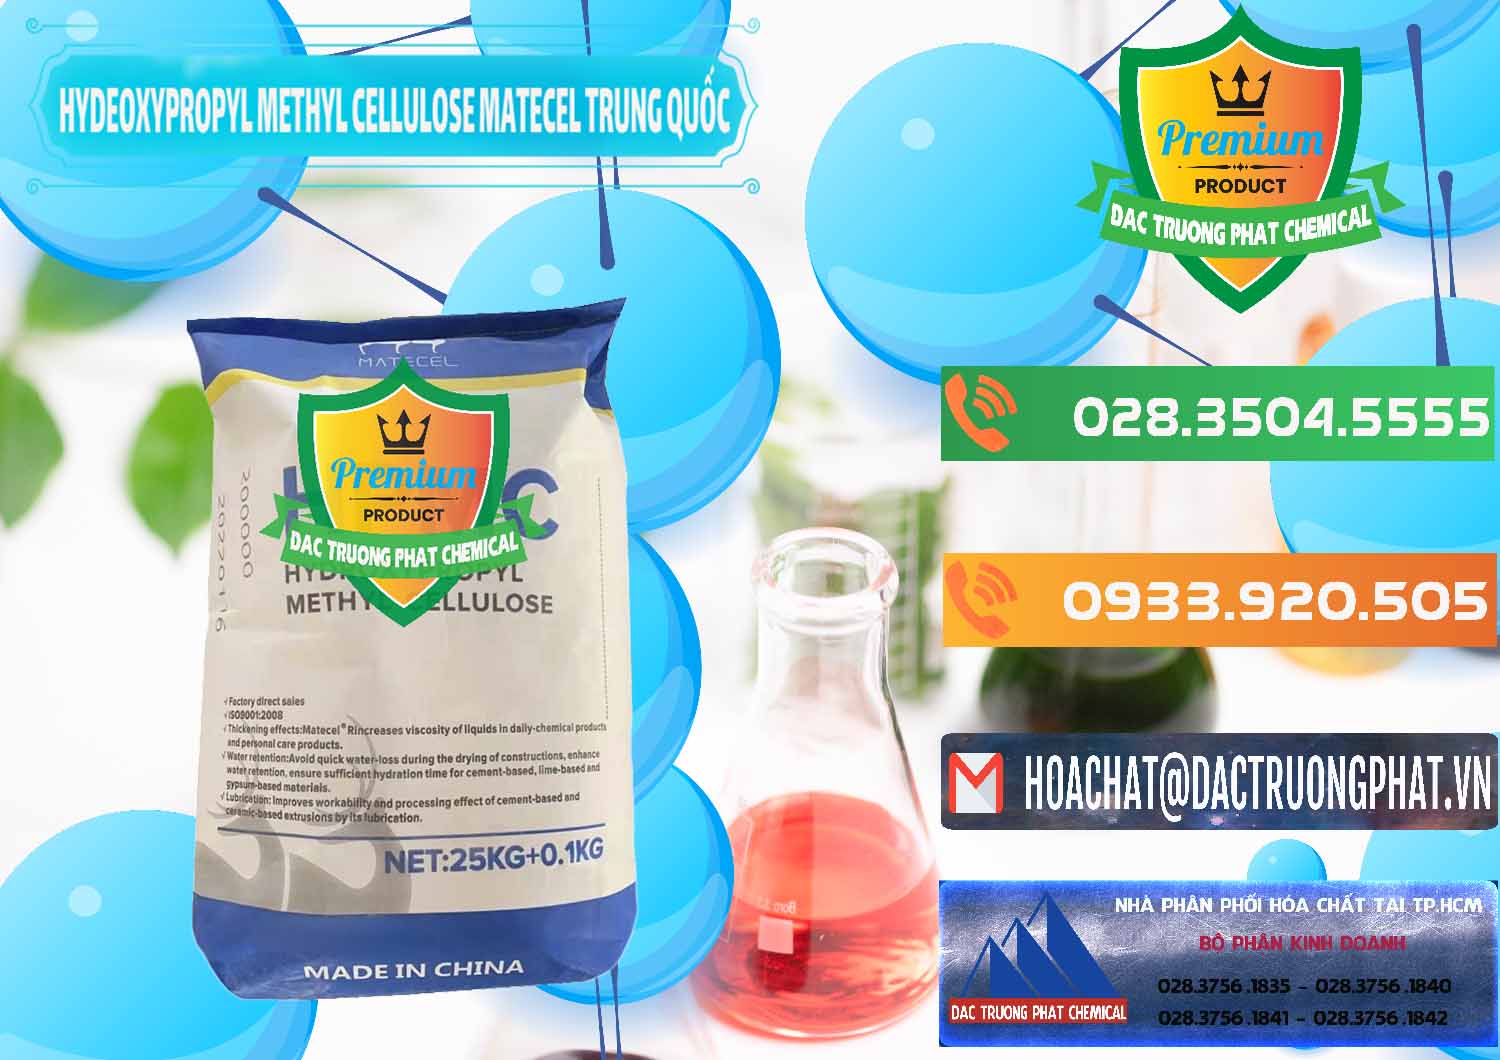 Bán - cung ứng Chất Tạo Đặc HPMC - Hydroxypropyl Methyl Cellulose Matecel Trung Quốc China - 0396 - Nơi chuyên cung cấp _ kinh doanh hóa chất tại TP.HCM - hoachatxulynuoc.com.vn